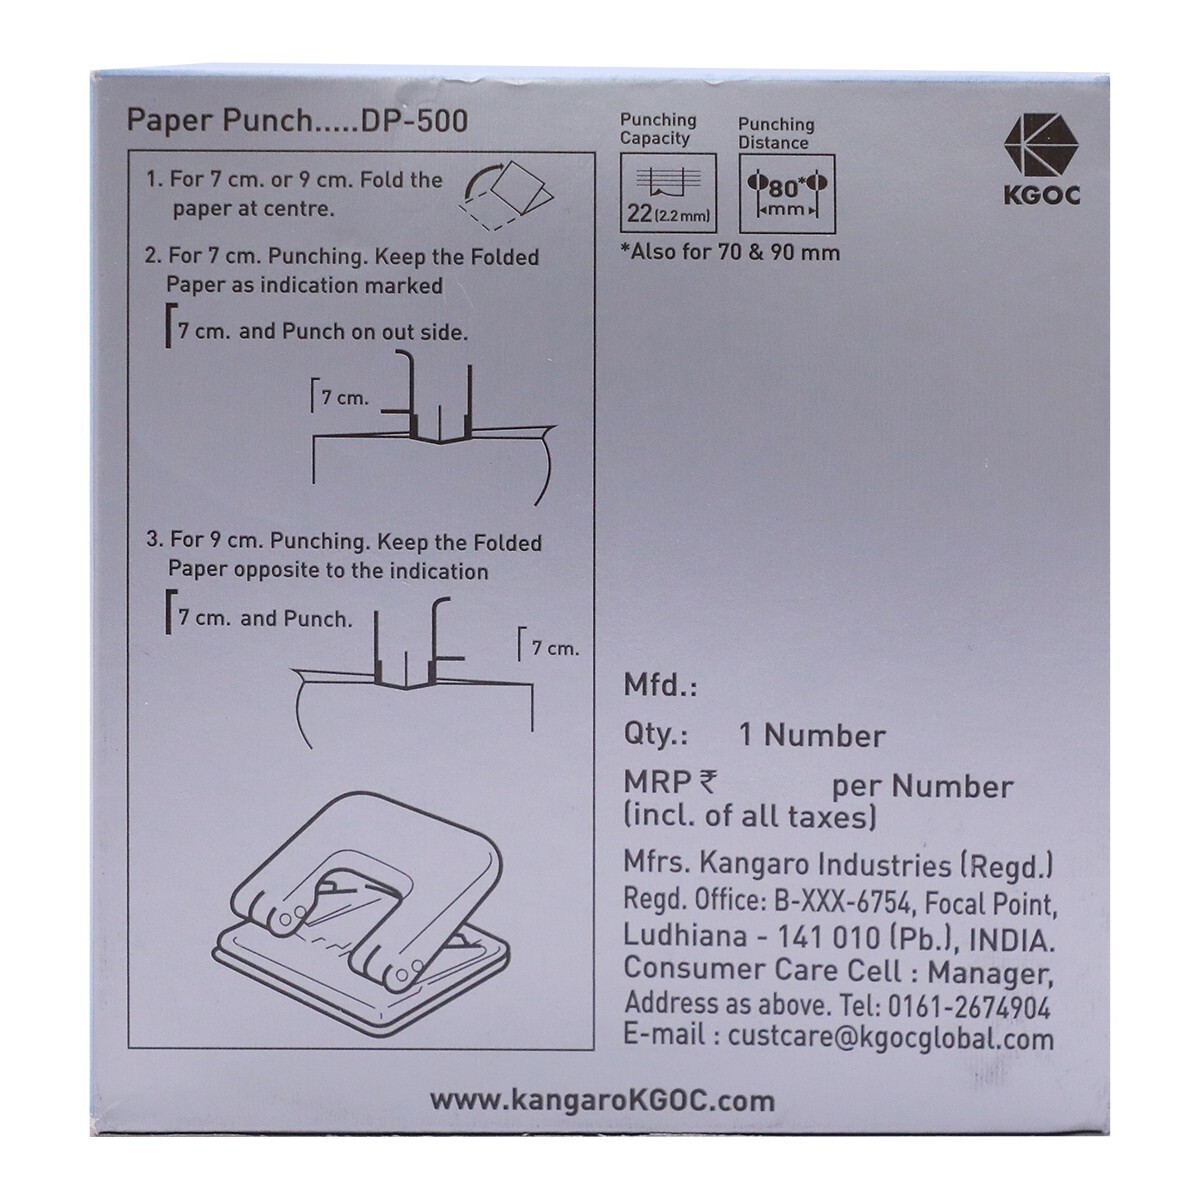 Kangaro Paper Punch DP-500